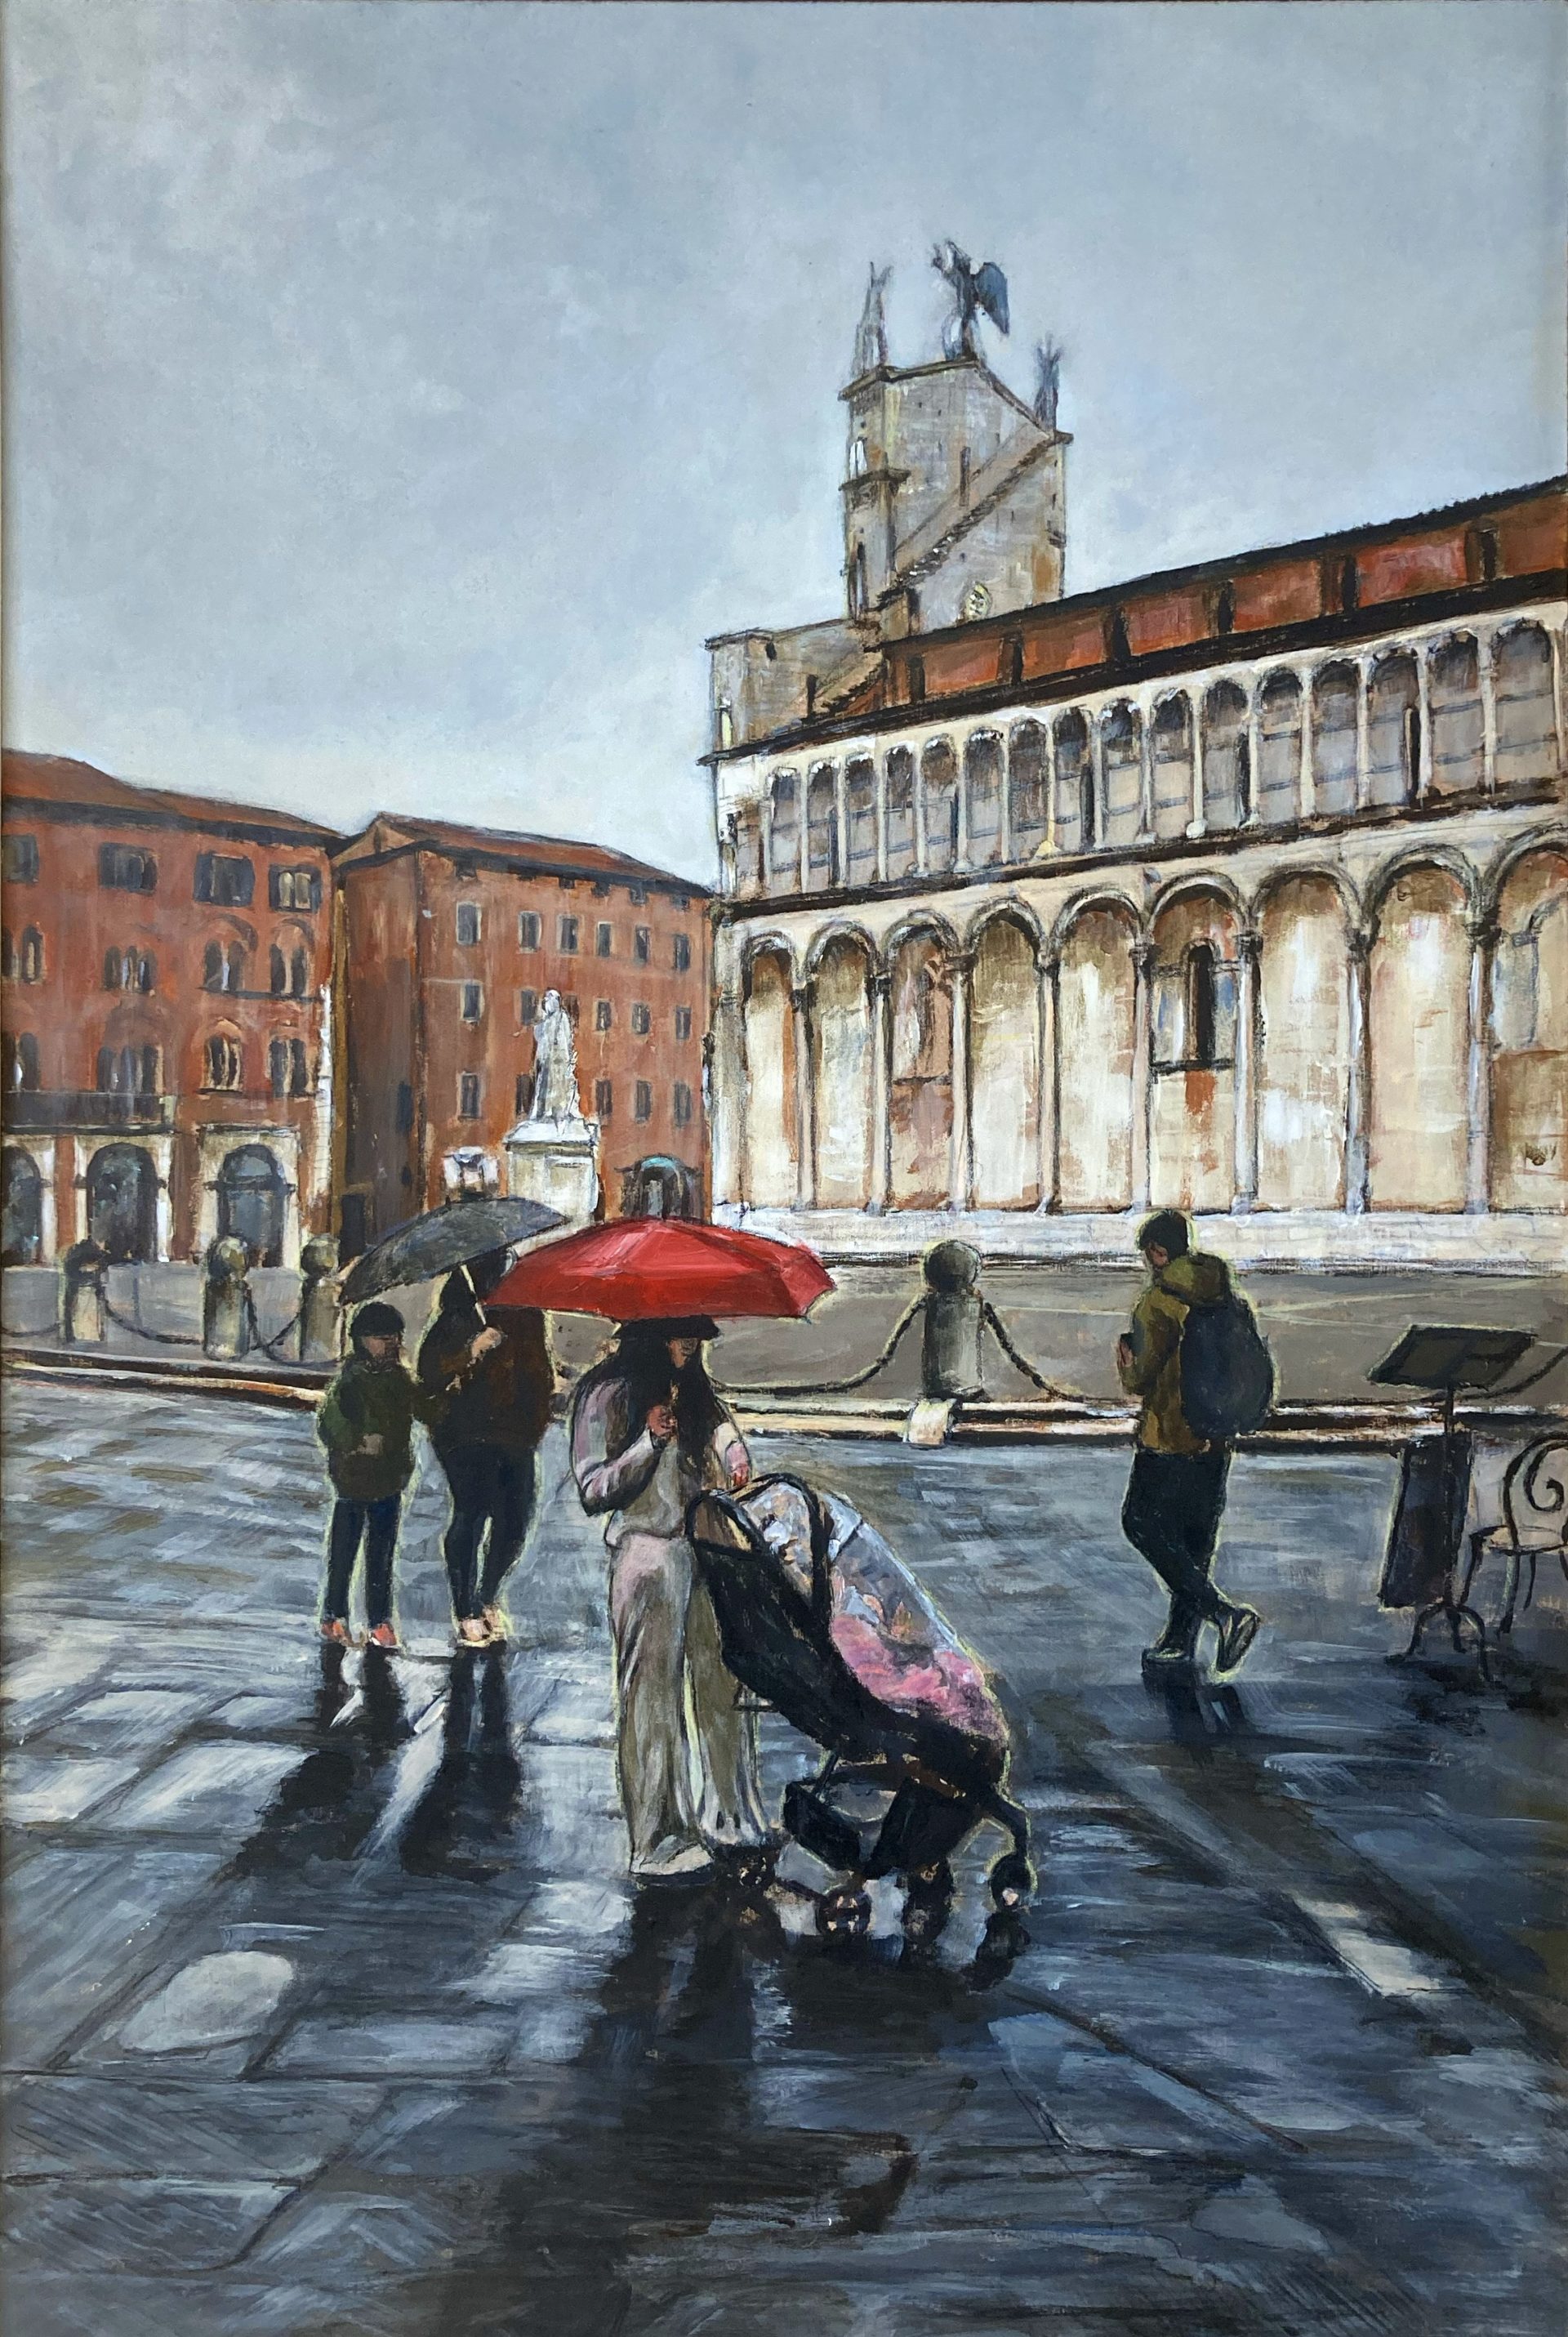 dipinto realistico a tema Lucca che rappresneta uno scorcio della chiesa di san michele in foro in un giorno piovoso. il dipinto rientra nella raccolta pittorica Lucca città di pioggia